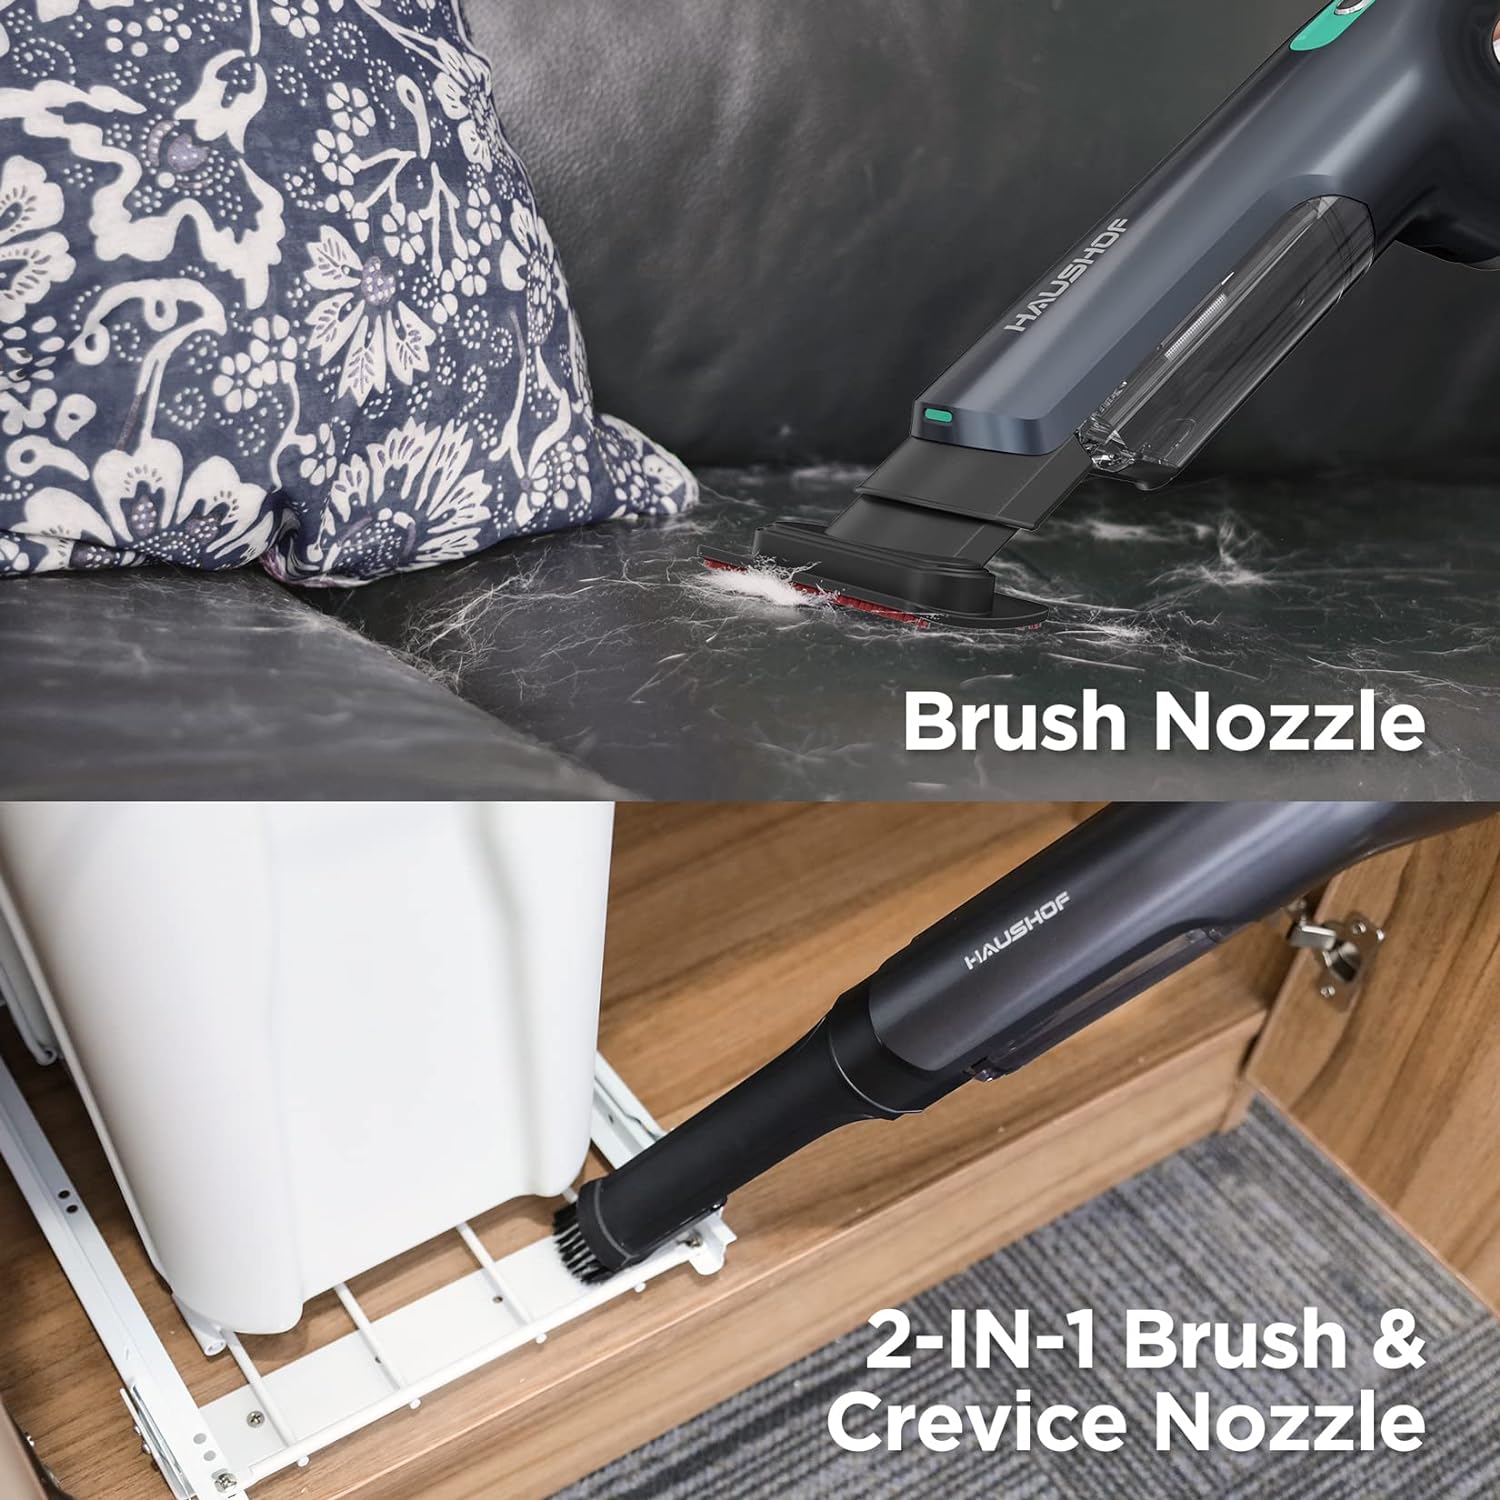 HAUSHOF Cordless Handheld Vacuum, with Brushless Motor